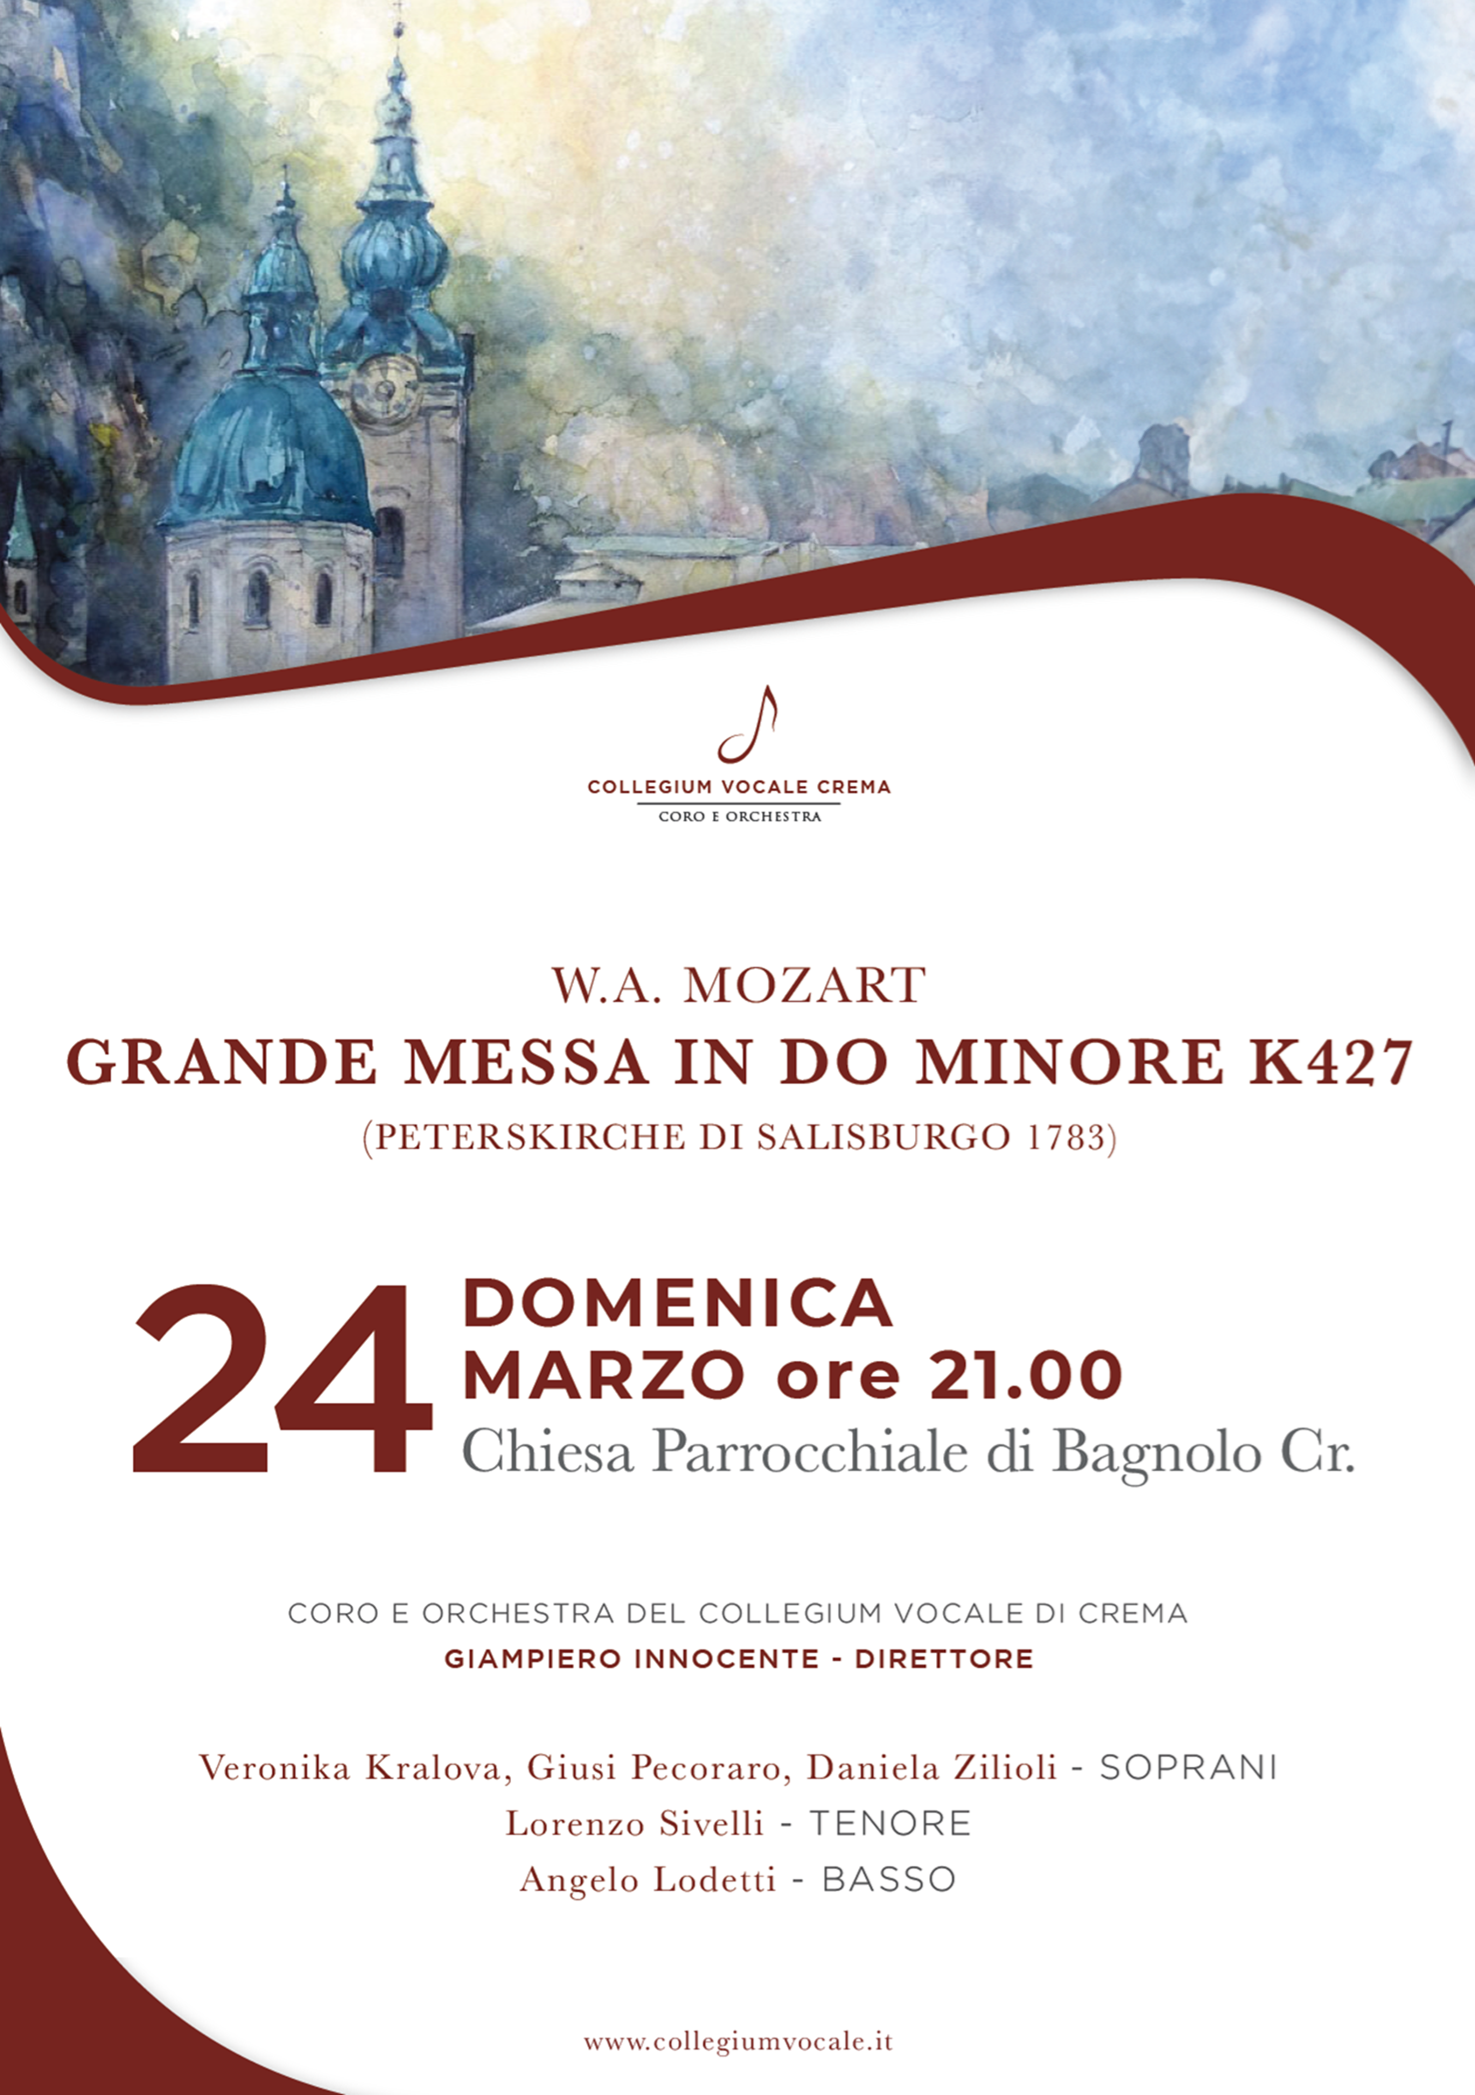 Il concerto della Domenica delle Palme nel segno della Grande Messa di Mozart il 24 marzo a Bagnolo